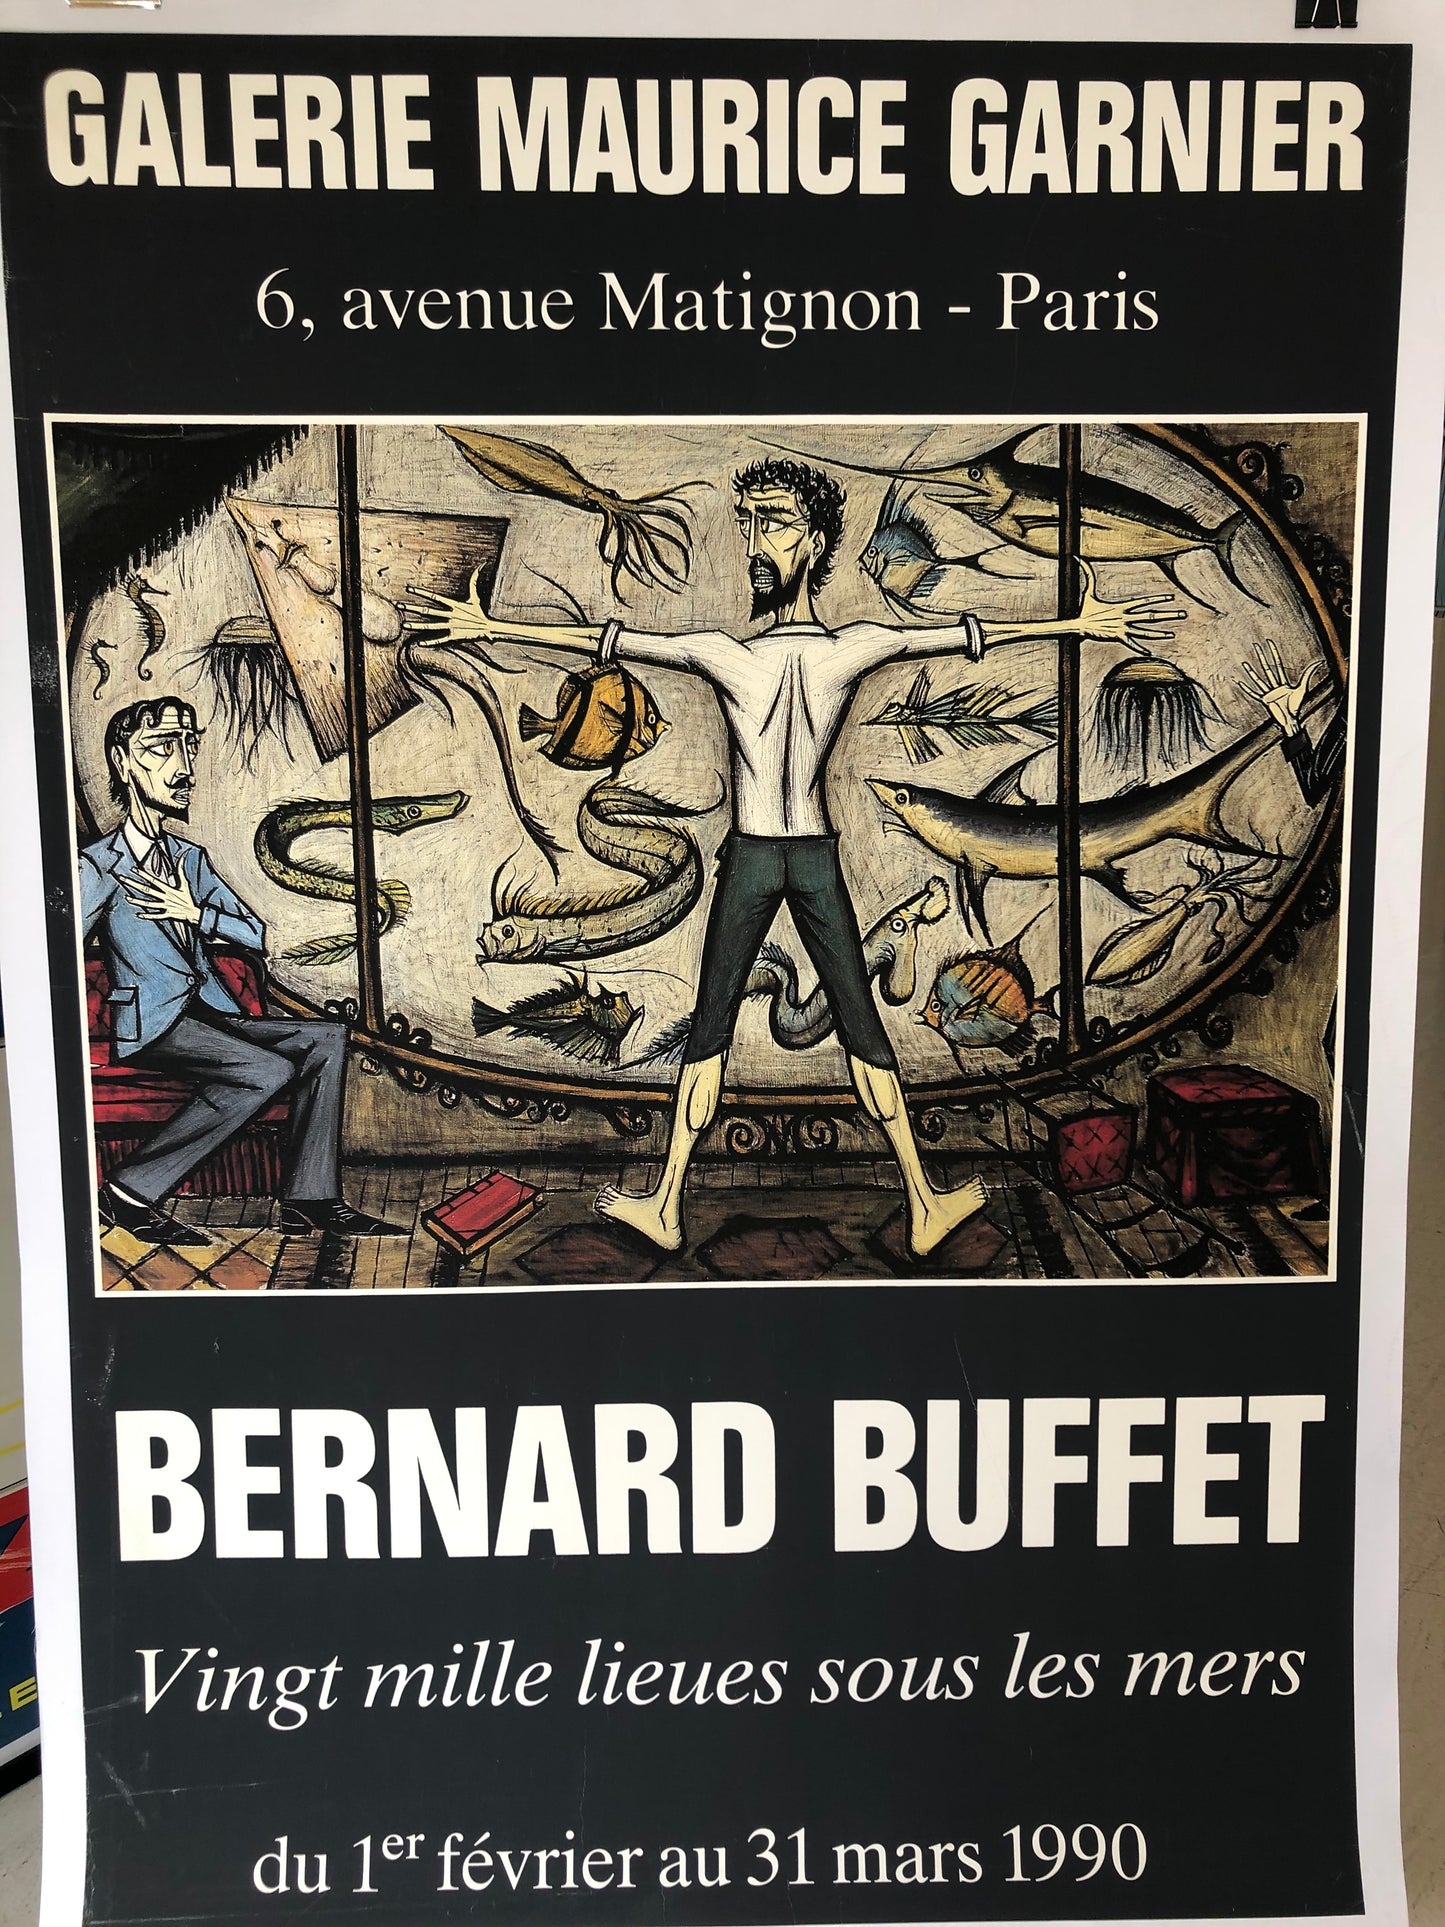 Bernard Buffet Exhibition Poster